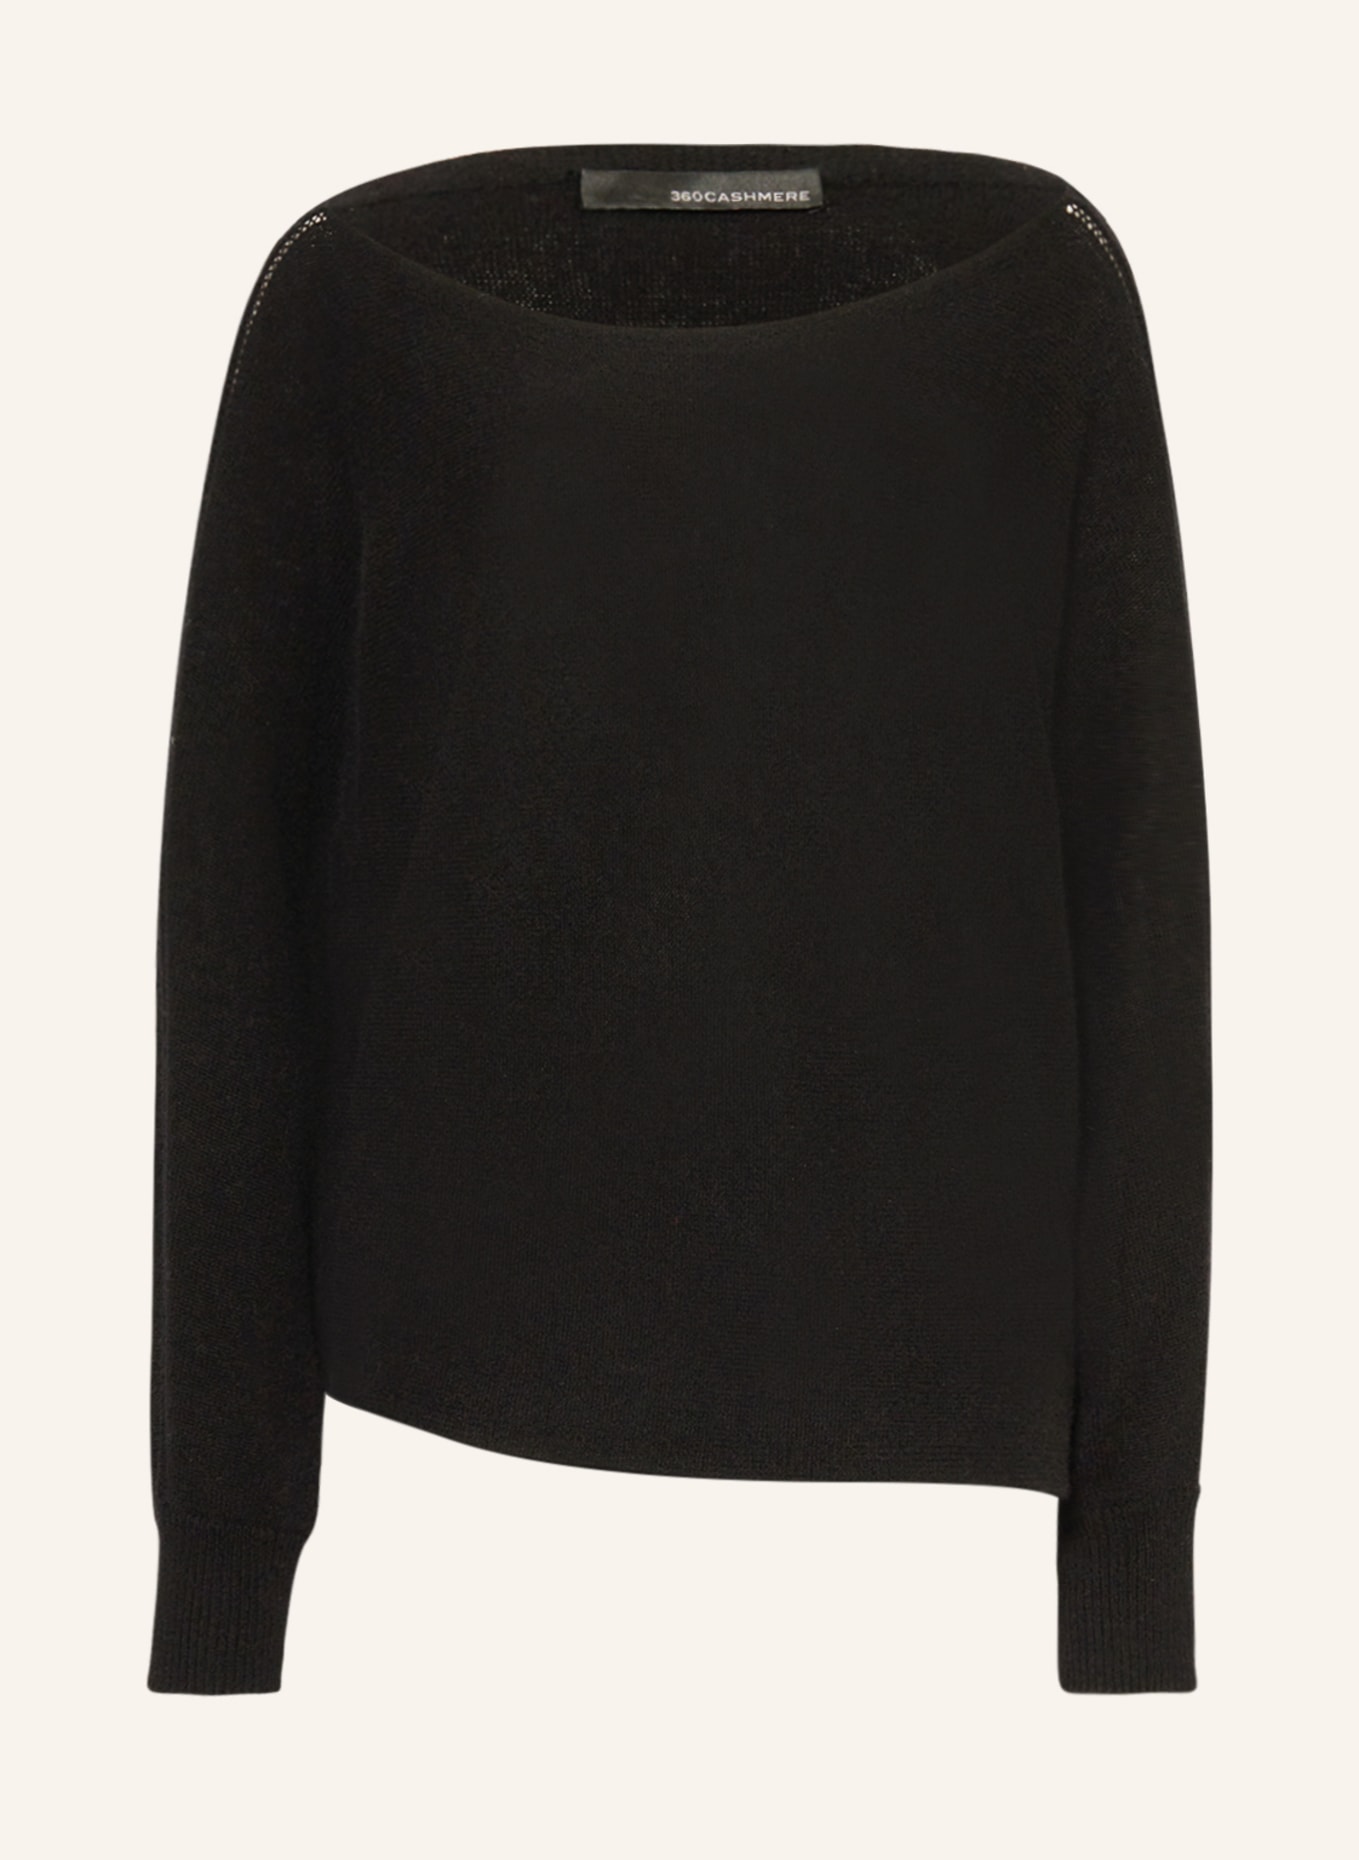 360CASHMERE Cashmere-Pullover MARYLIN, Farbe: SCHWARZ (Bild 1)